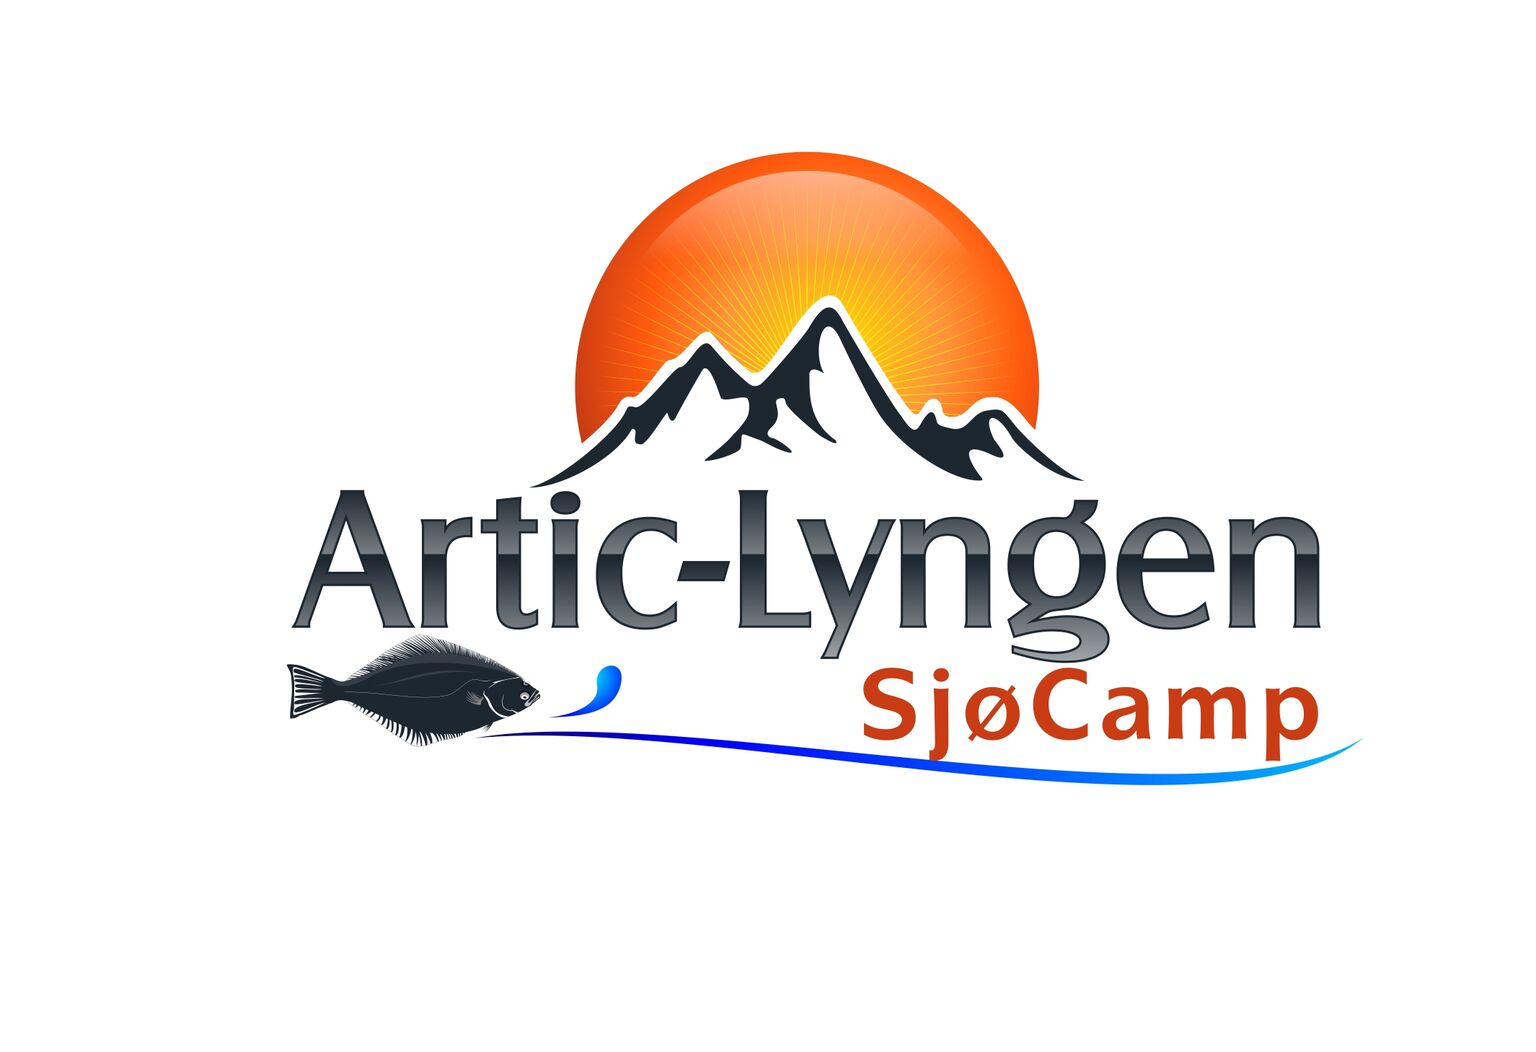 Artic Lyngen sjcamp